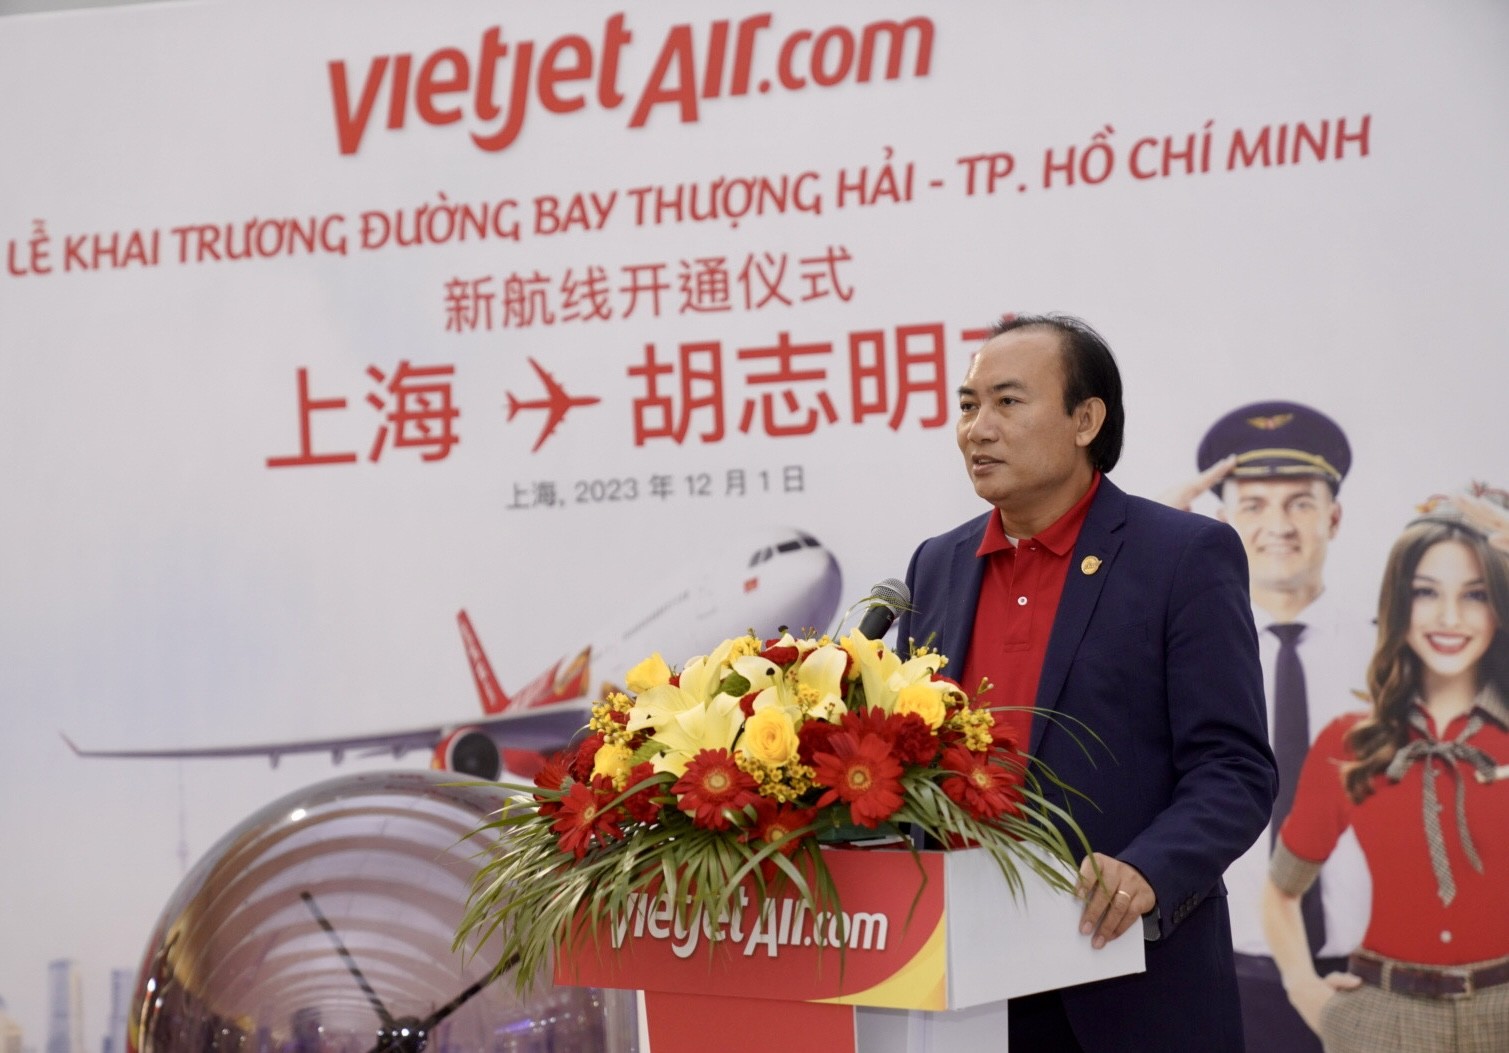 Tin vui: Vietjet vừa khai trương đường bay thẳng giữa Thượng Hải và TP Hồ Chí Minh - ảnh 5